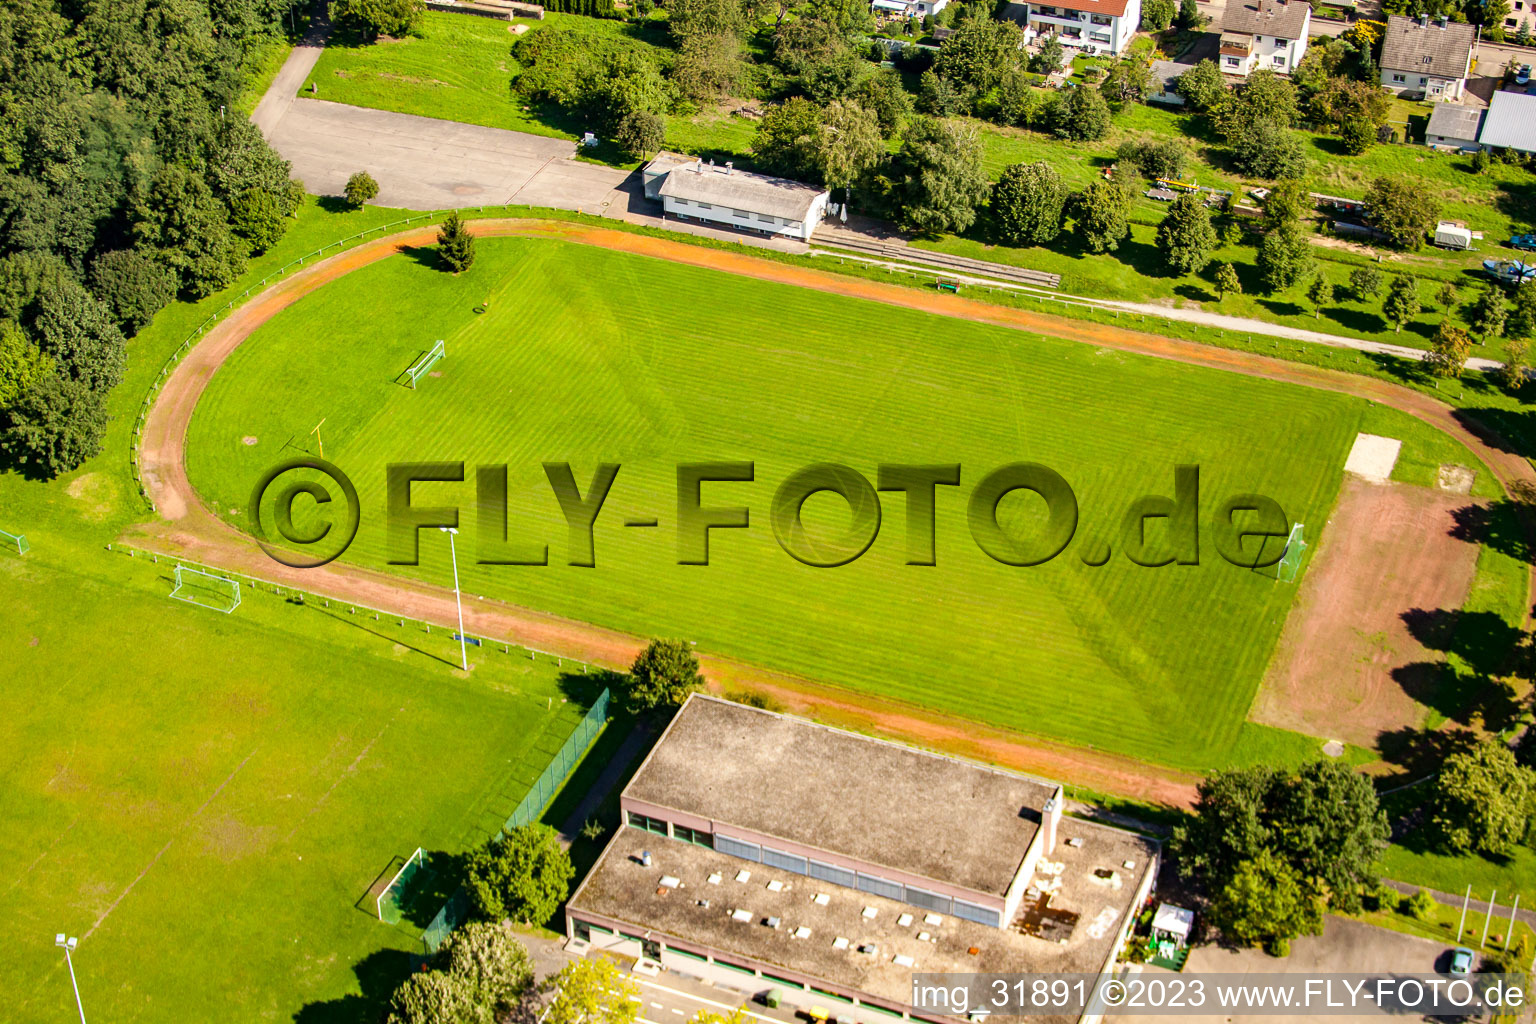 Vue aérienne de Club de foot 1919 Rauental à le quartier Rauental in Rastatt dans le département Bade-Wurtemberg, Allemagne